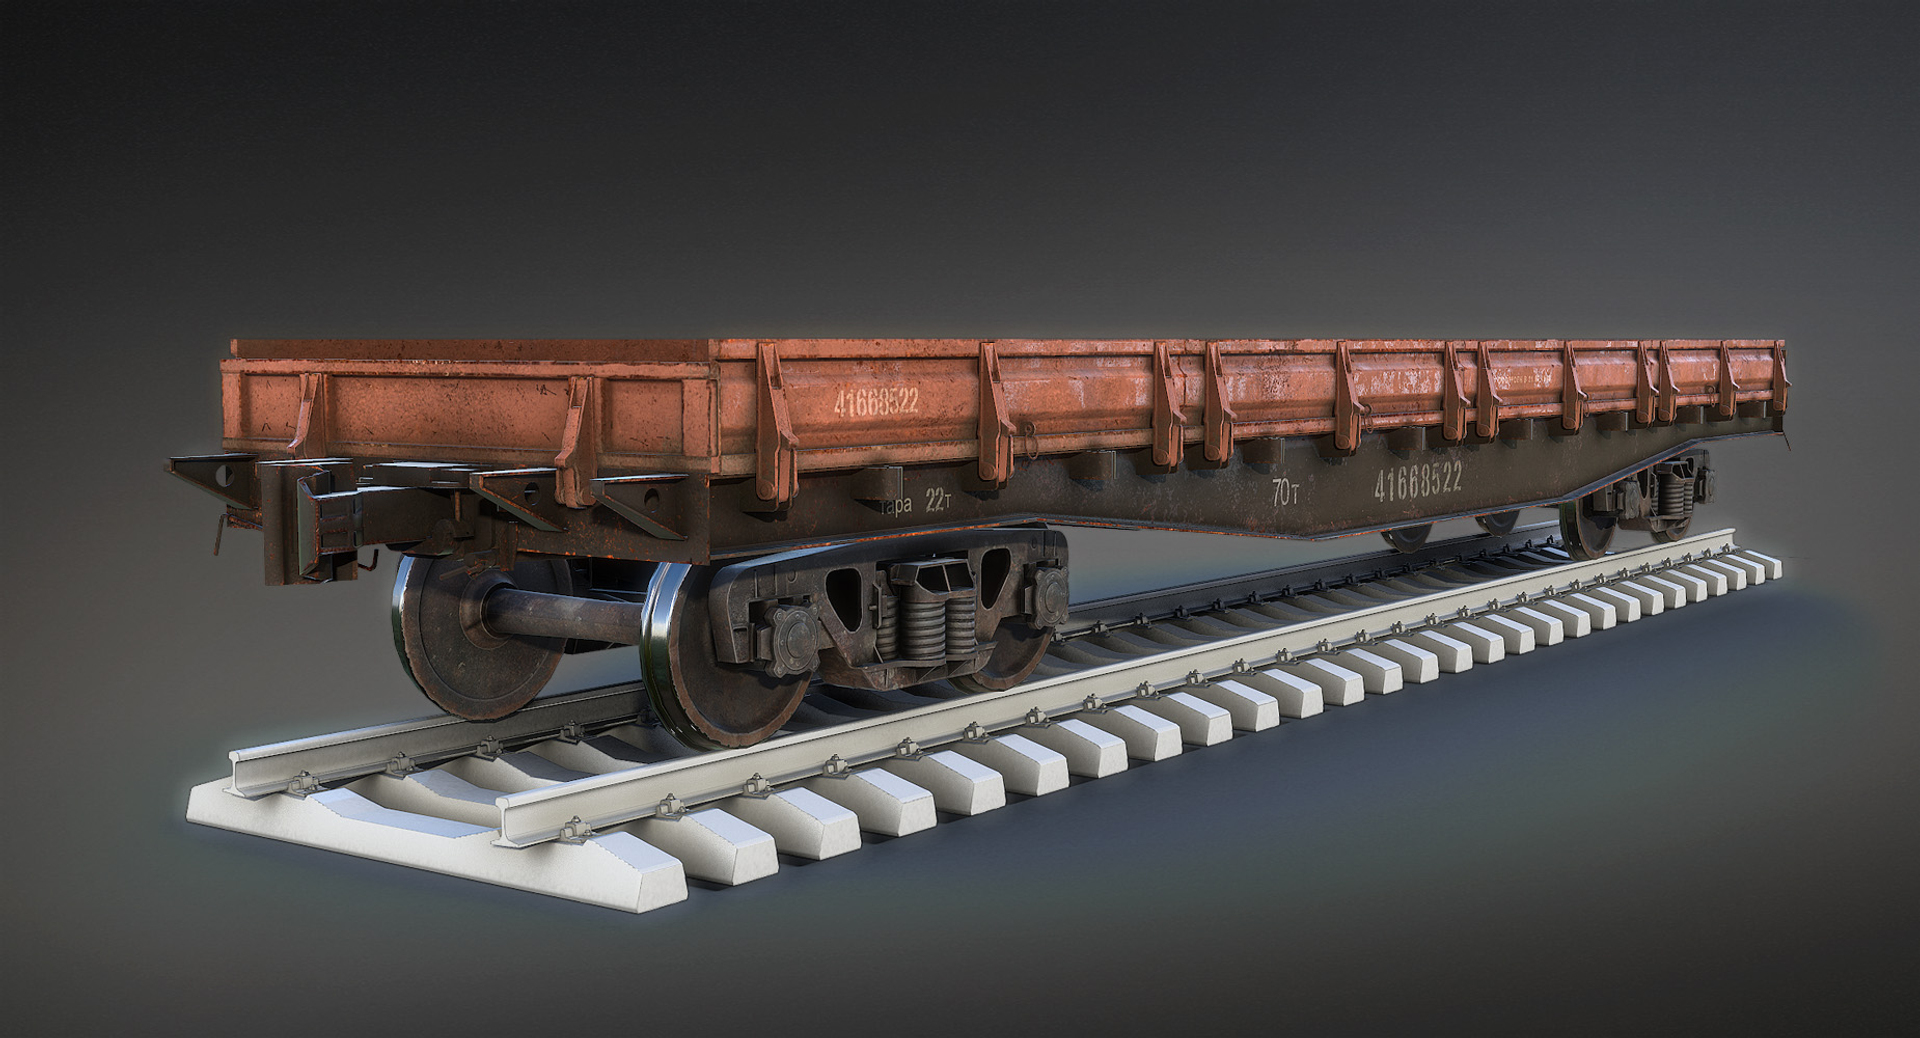 Железнодорожный вагон платформа. 13-6887-03 Платформа. 3d model ЖД вагон 750мм. Вагон-платформа Sgmmns 40’. 3д модель поезда ра3.